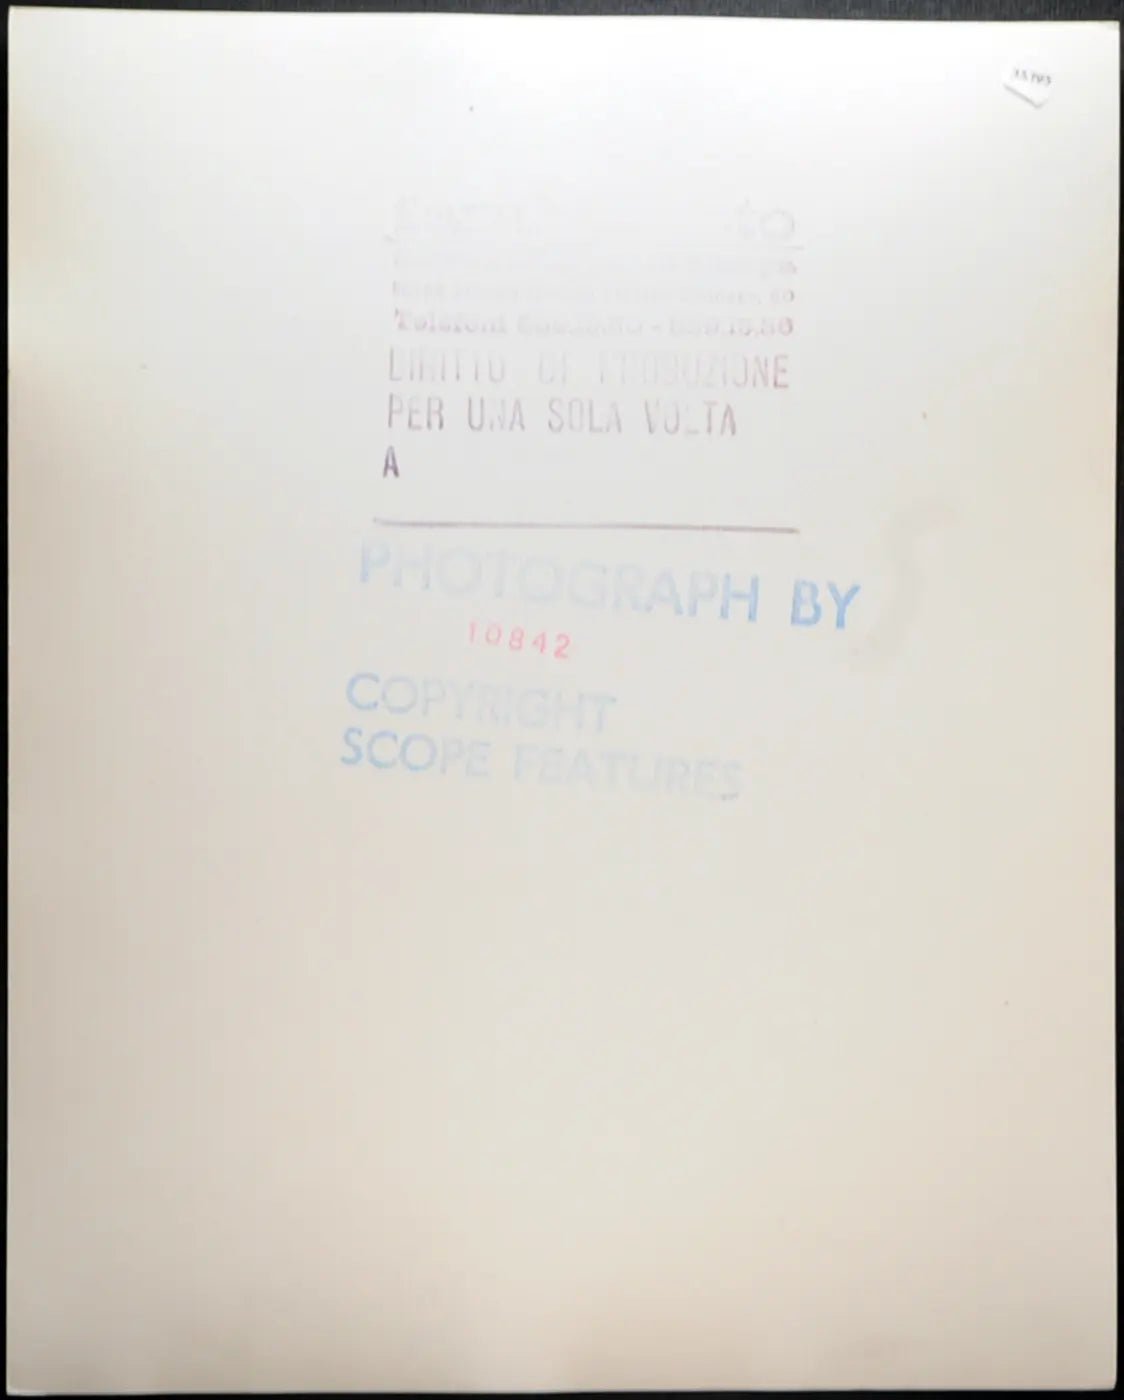 Modella anni 70 Ft 35195 - Stampa 20x25 cm - Farabola Stampa ai sali d'argento